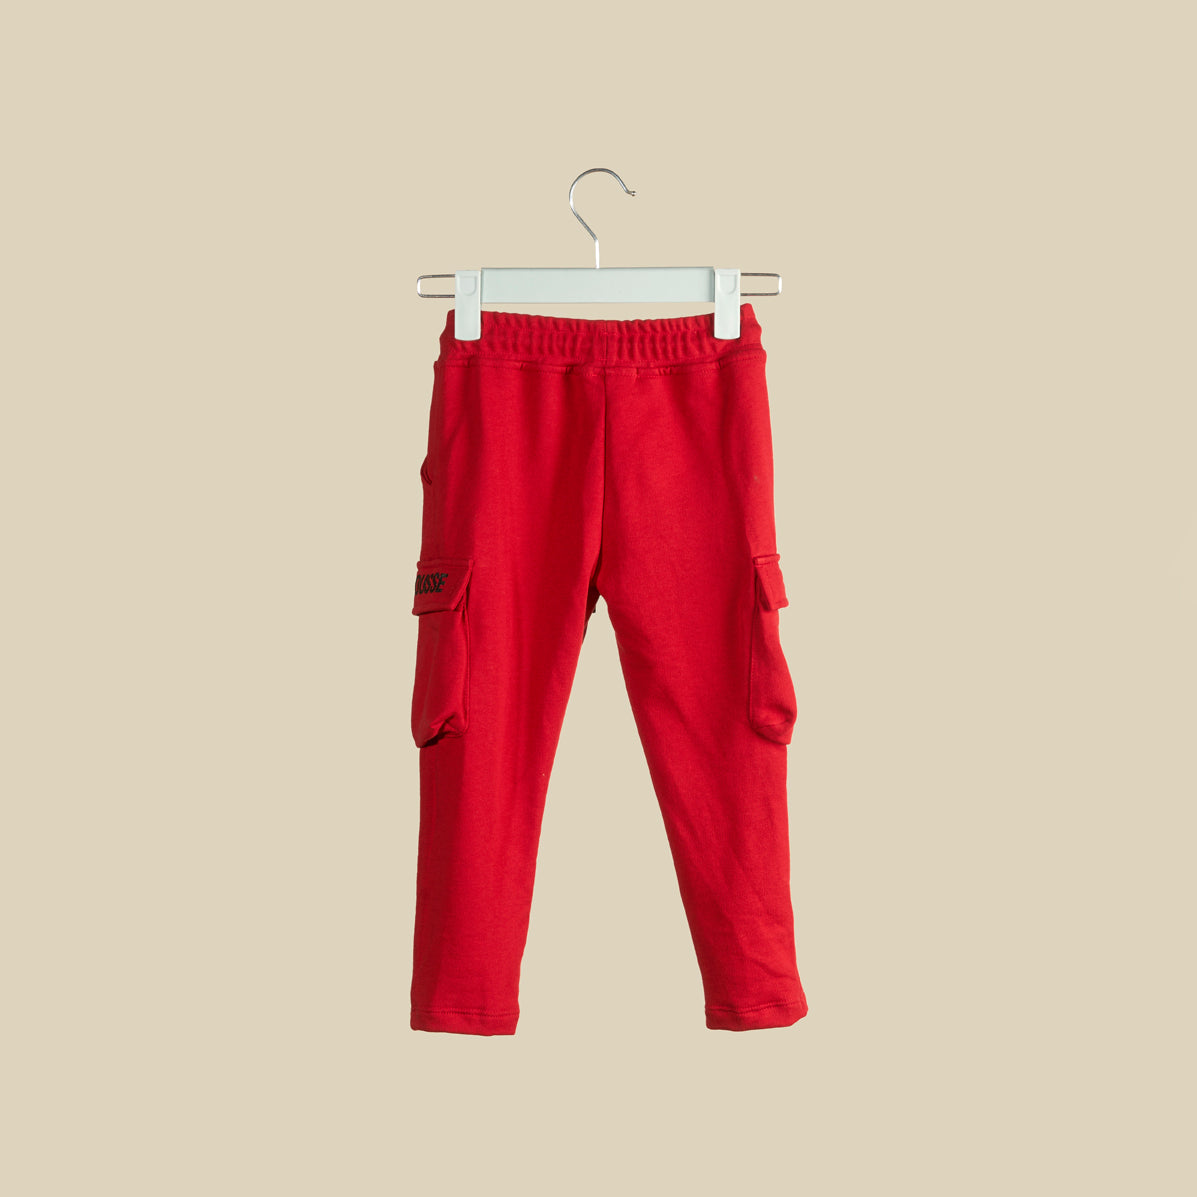 Pantalone cargo in tuta rossa con elastico in vita